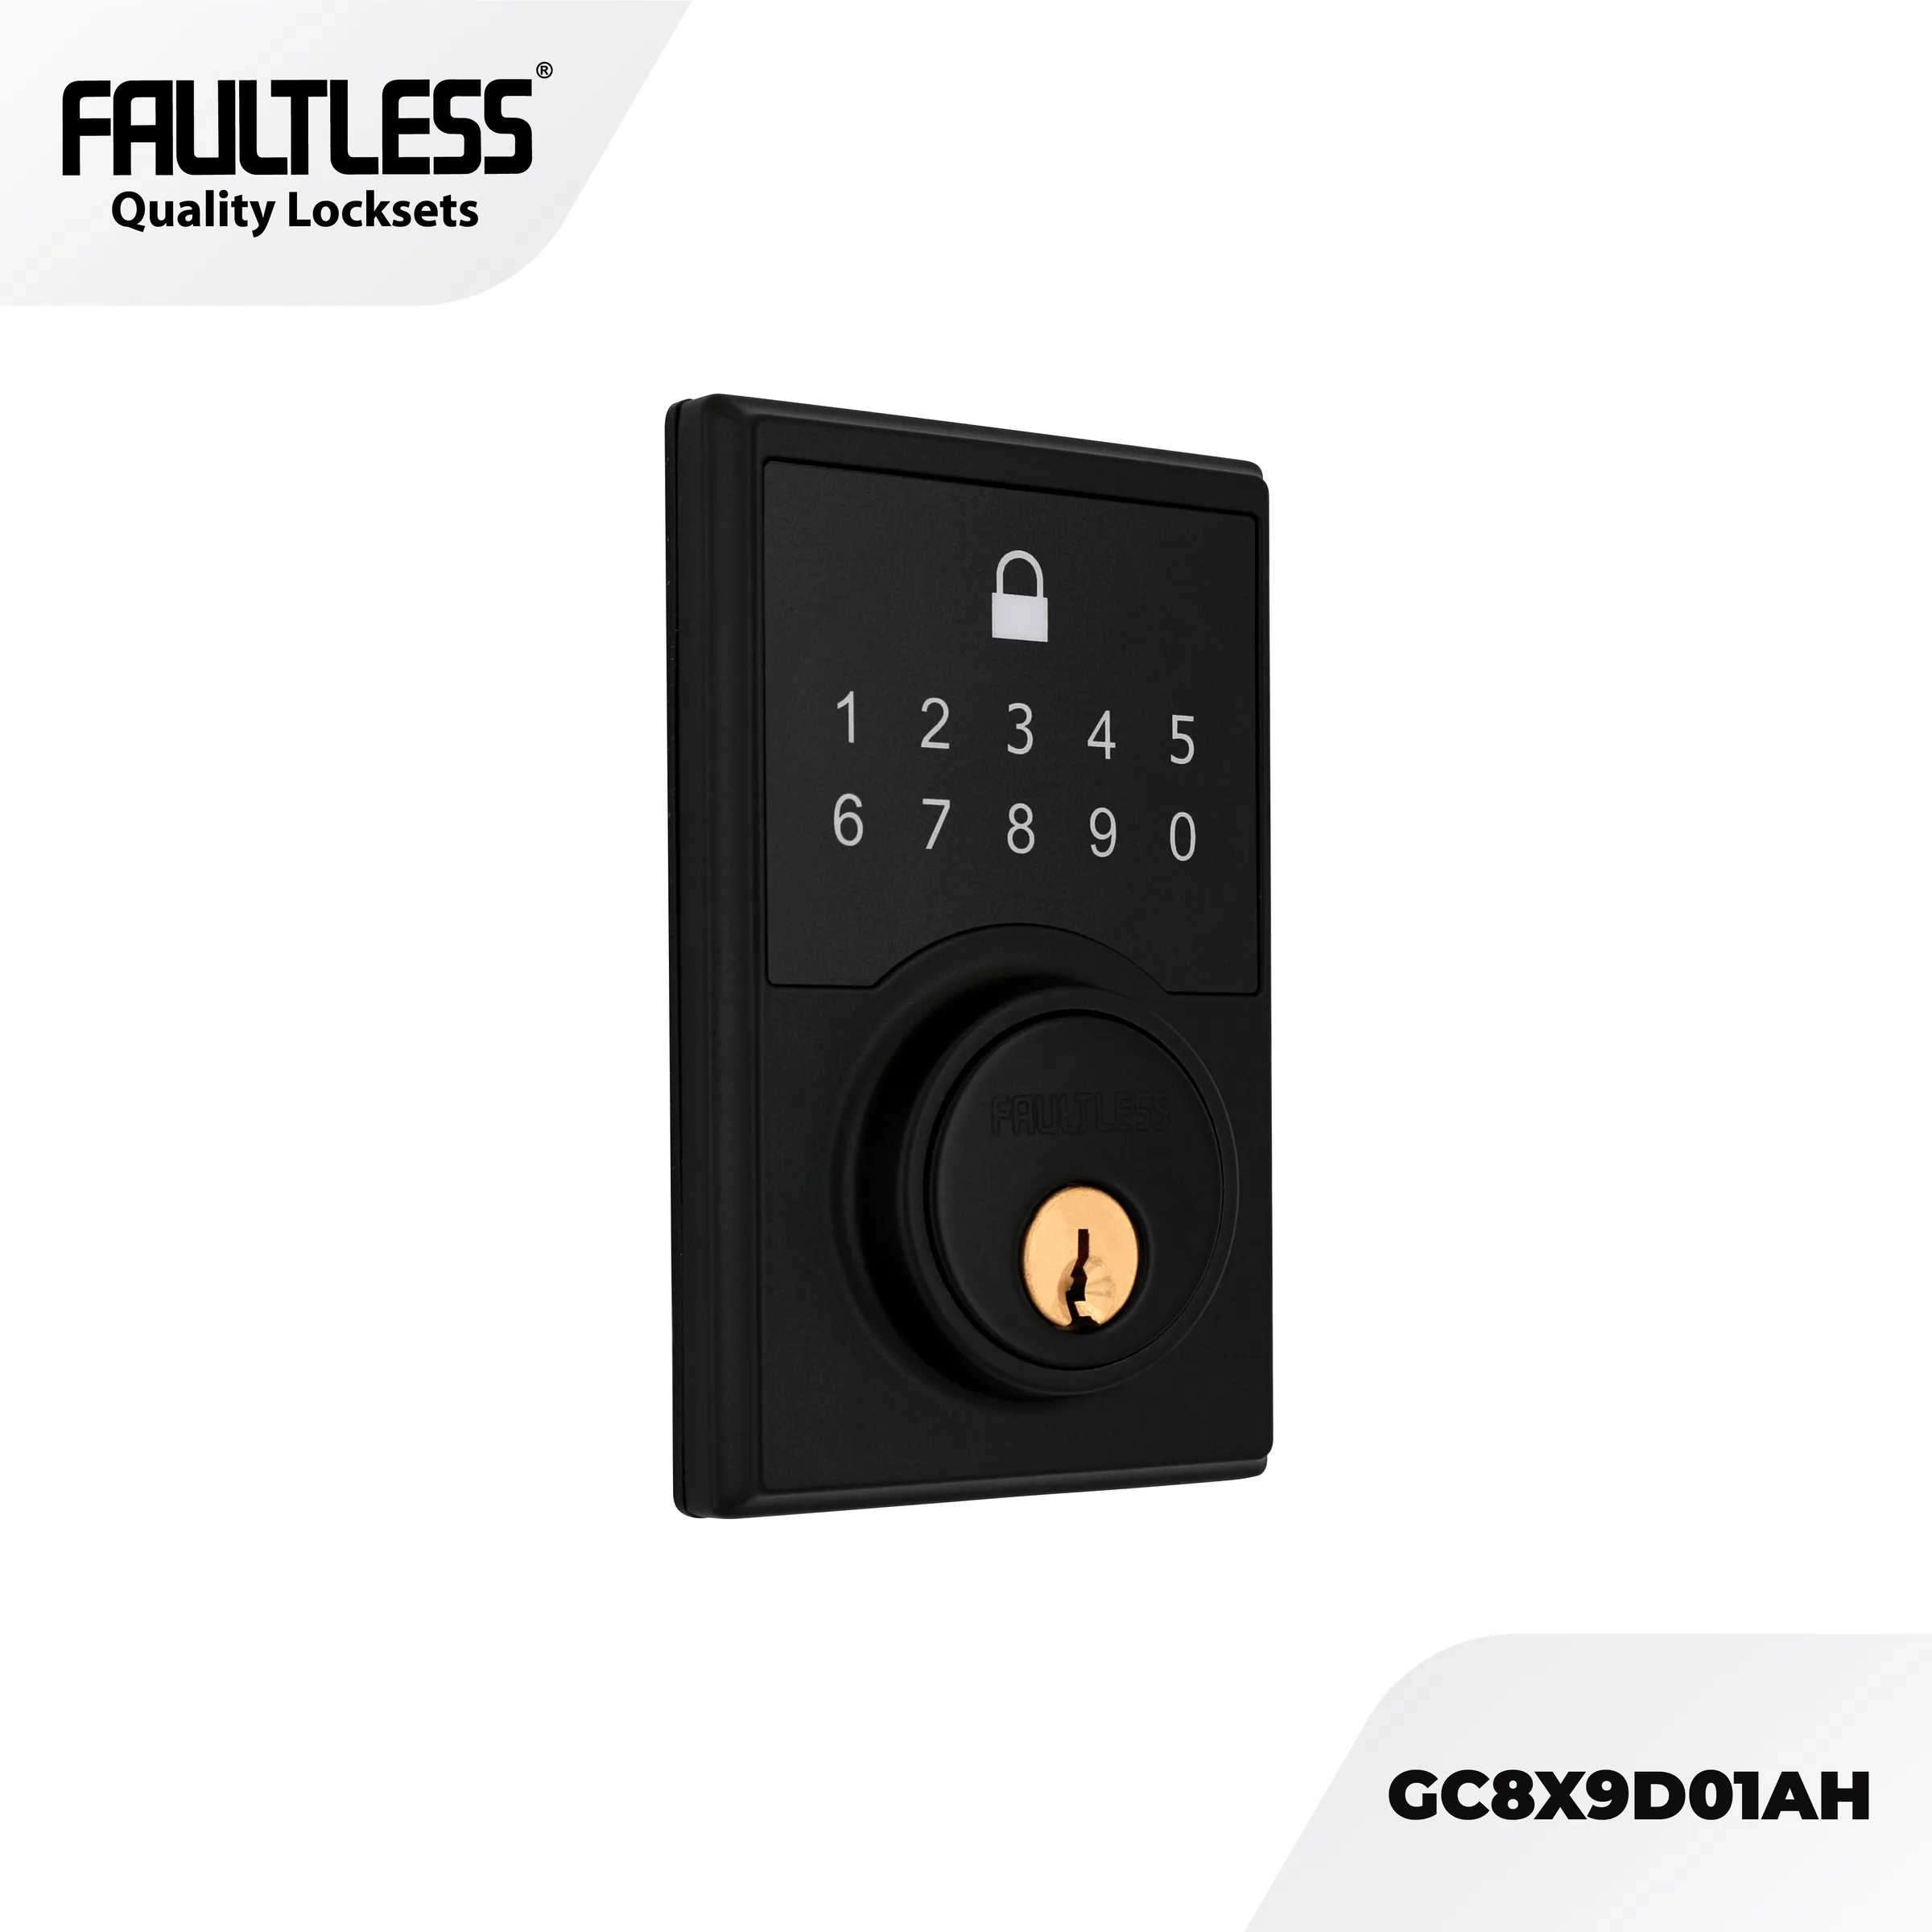 Faultless Compact Touch Electronic Deadbolt - GC8X9D01AH